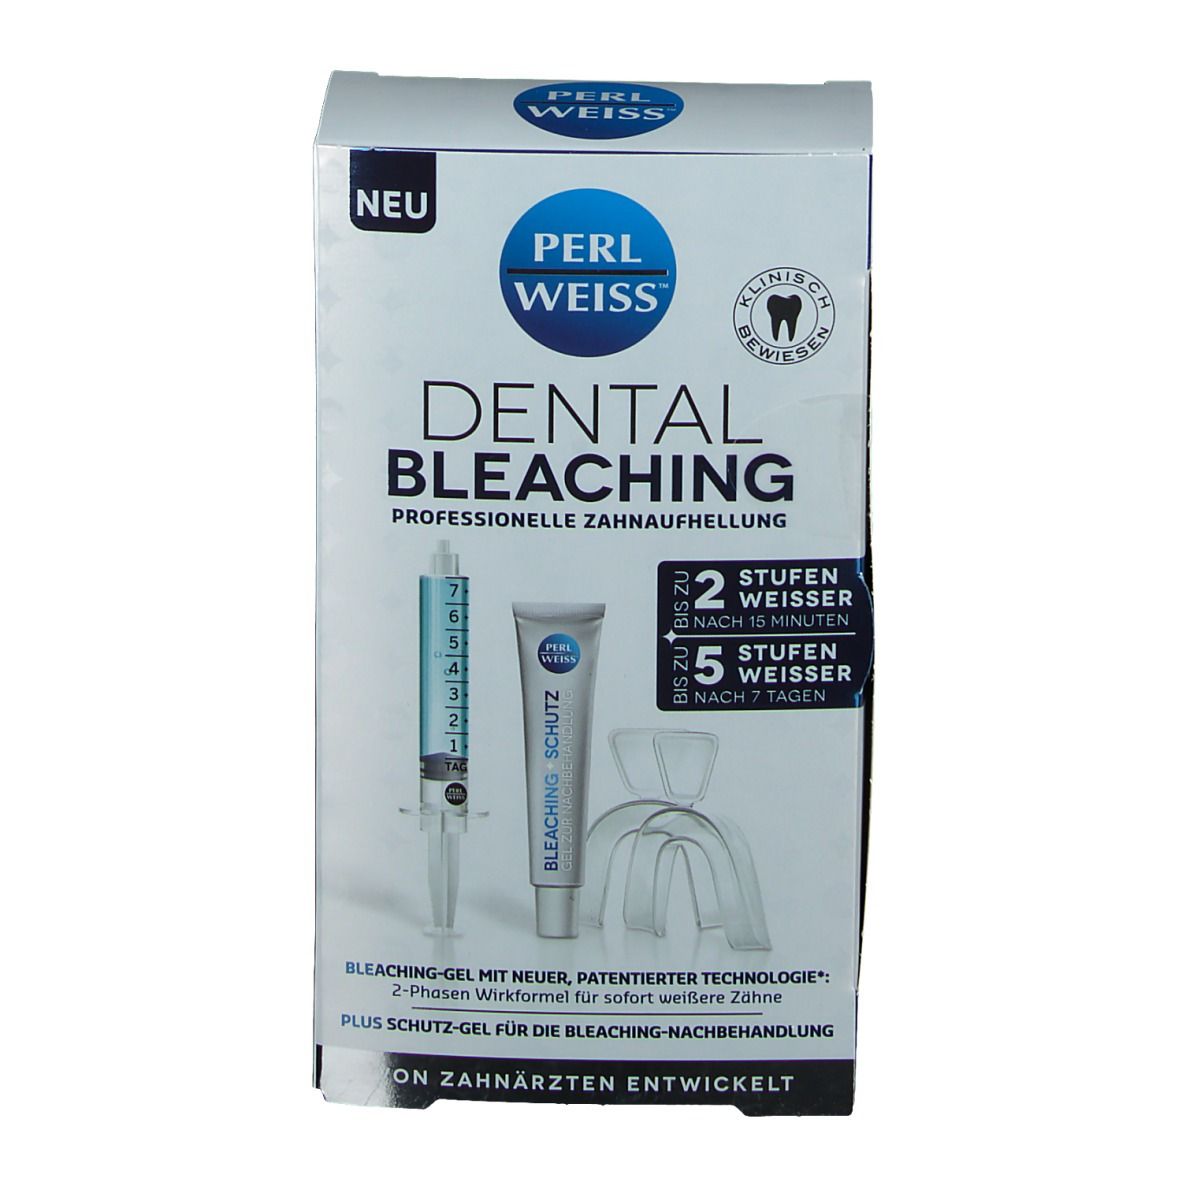 PERLWEISS® Dental Bleaching